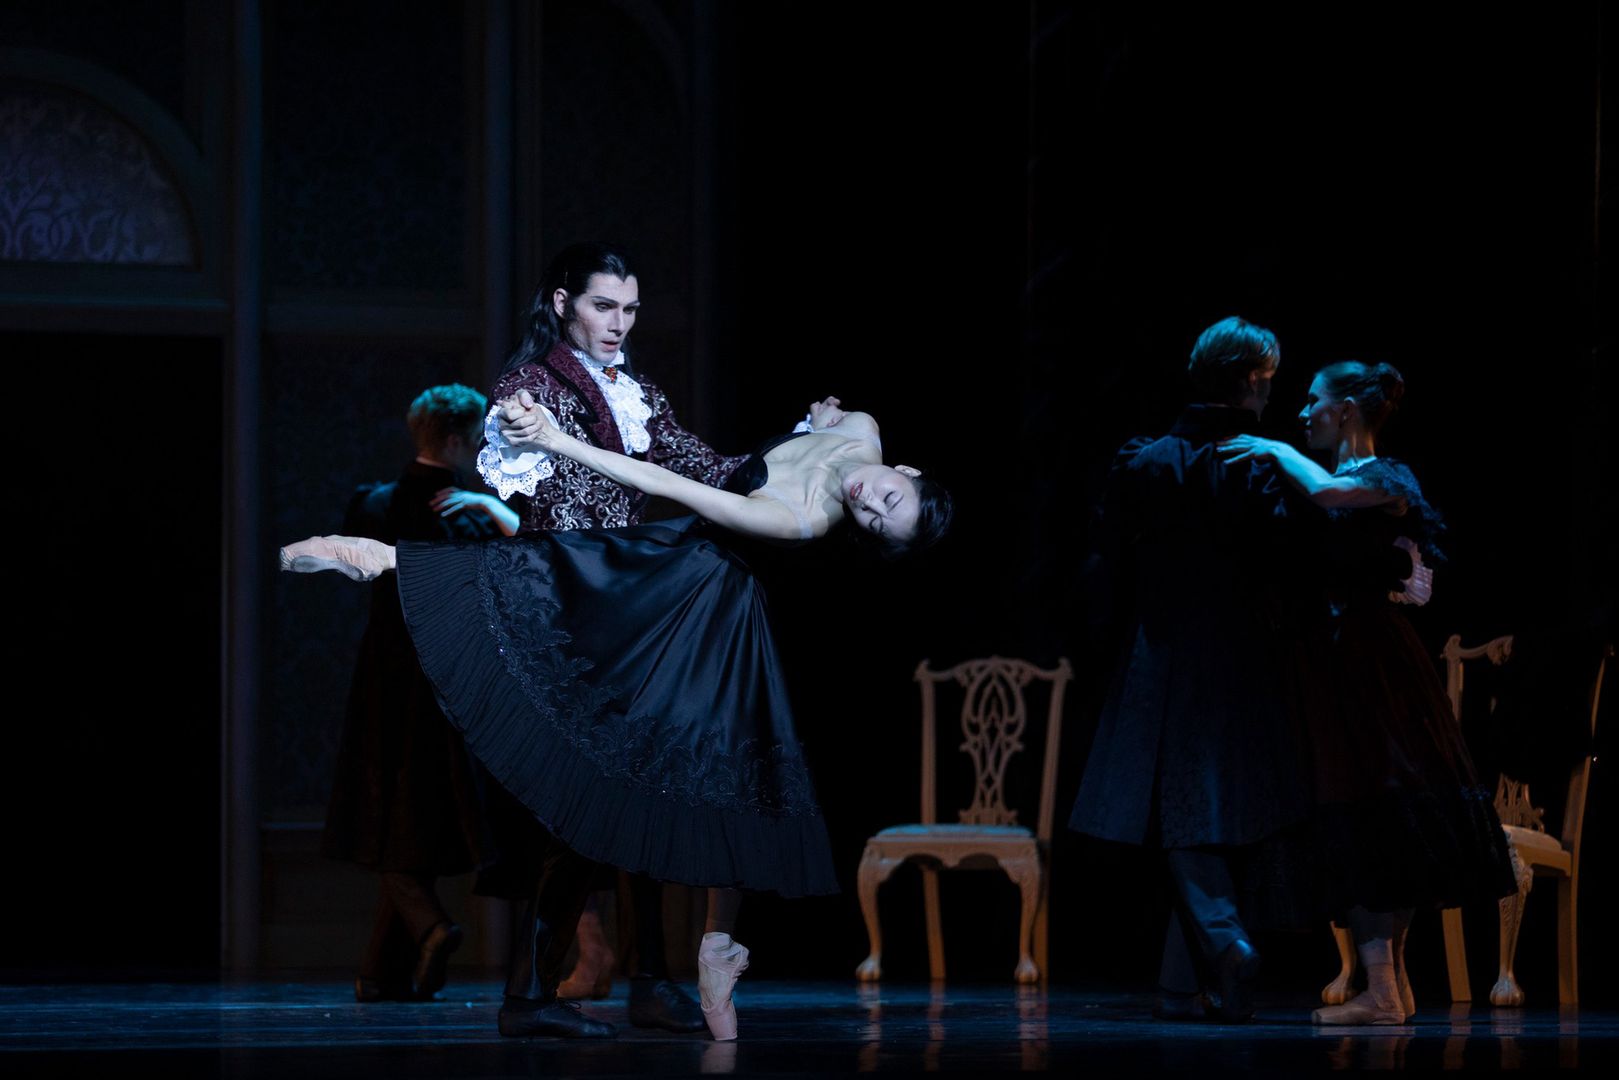 Dracula W Operze Narodowej Zjawiskowy Balet Z Muzyk Z A Cuckiego